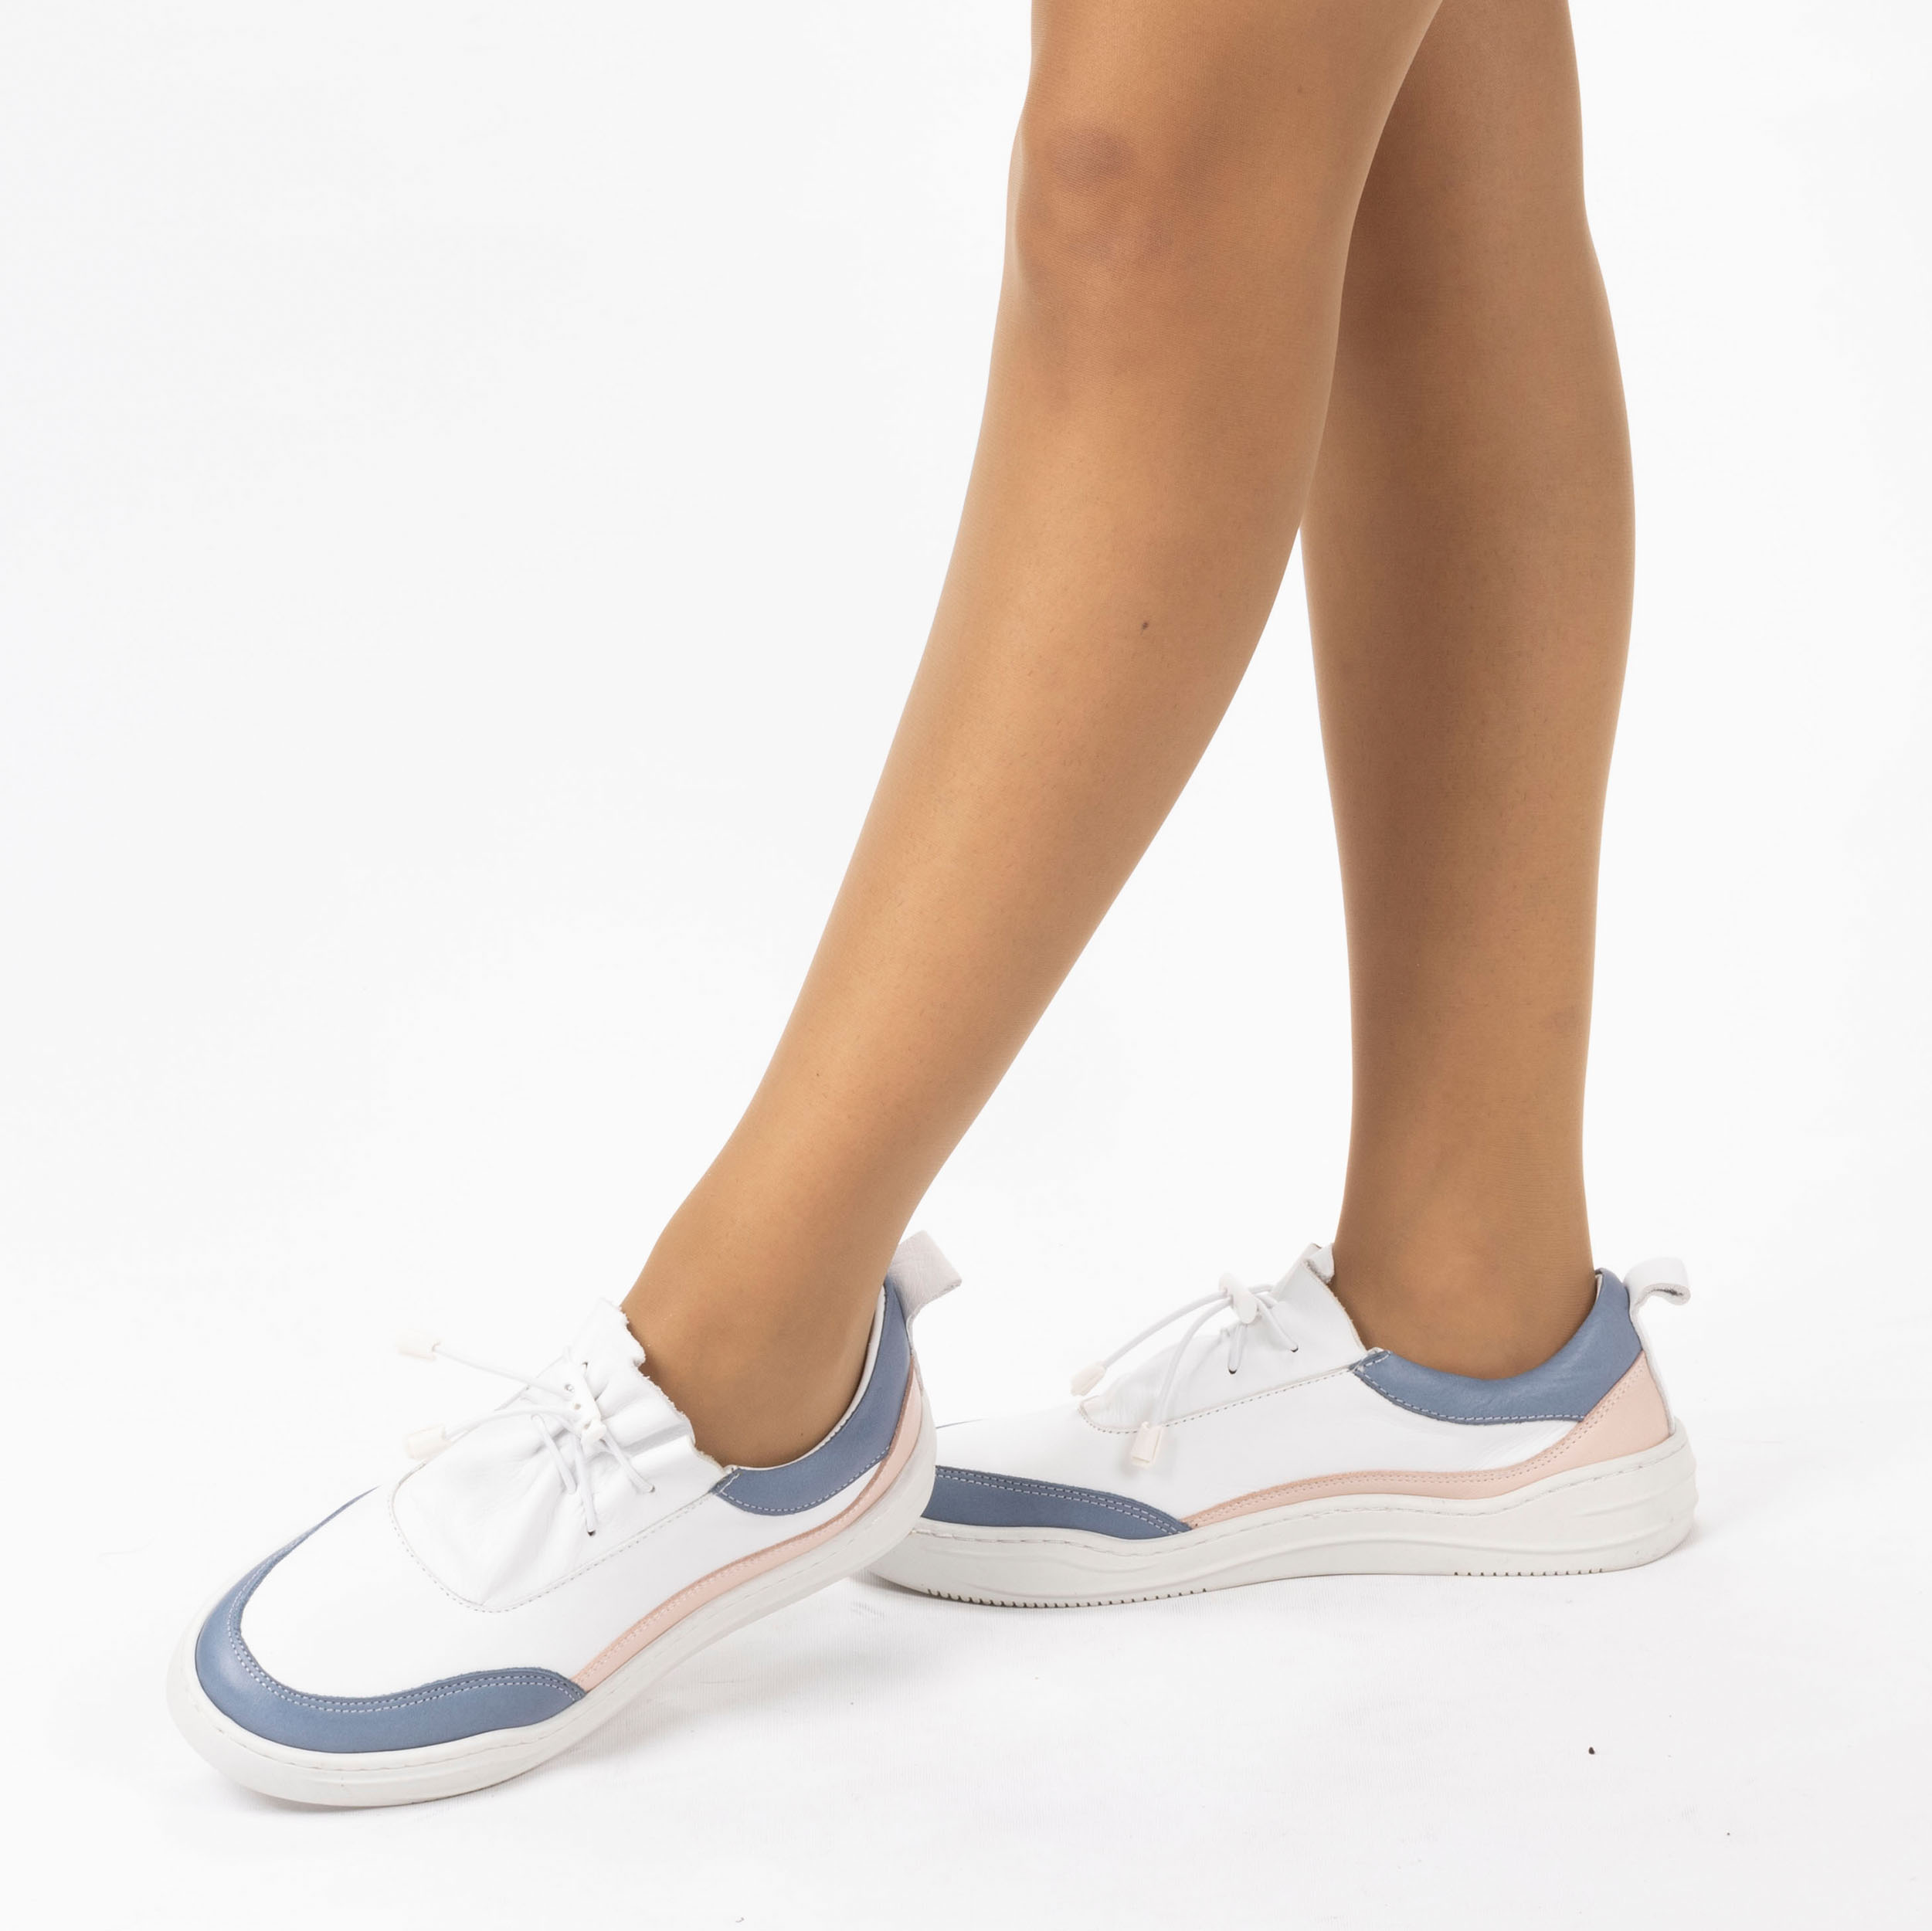 Kadın Hakiki Deri  Günlük Spor Ayakkabı / Sneakers, Renk: Mavi - Pembe, Beden: 41